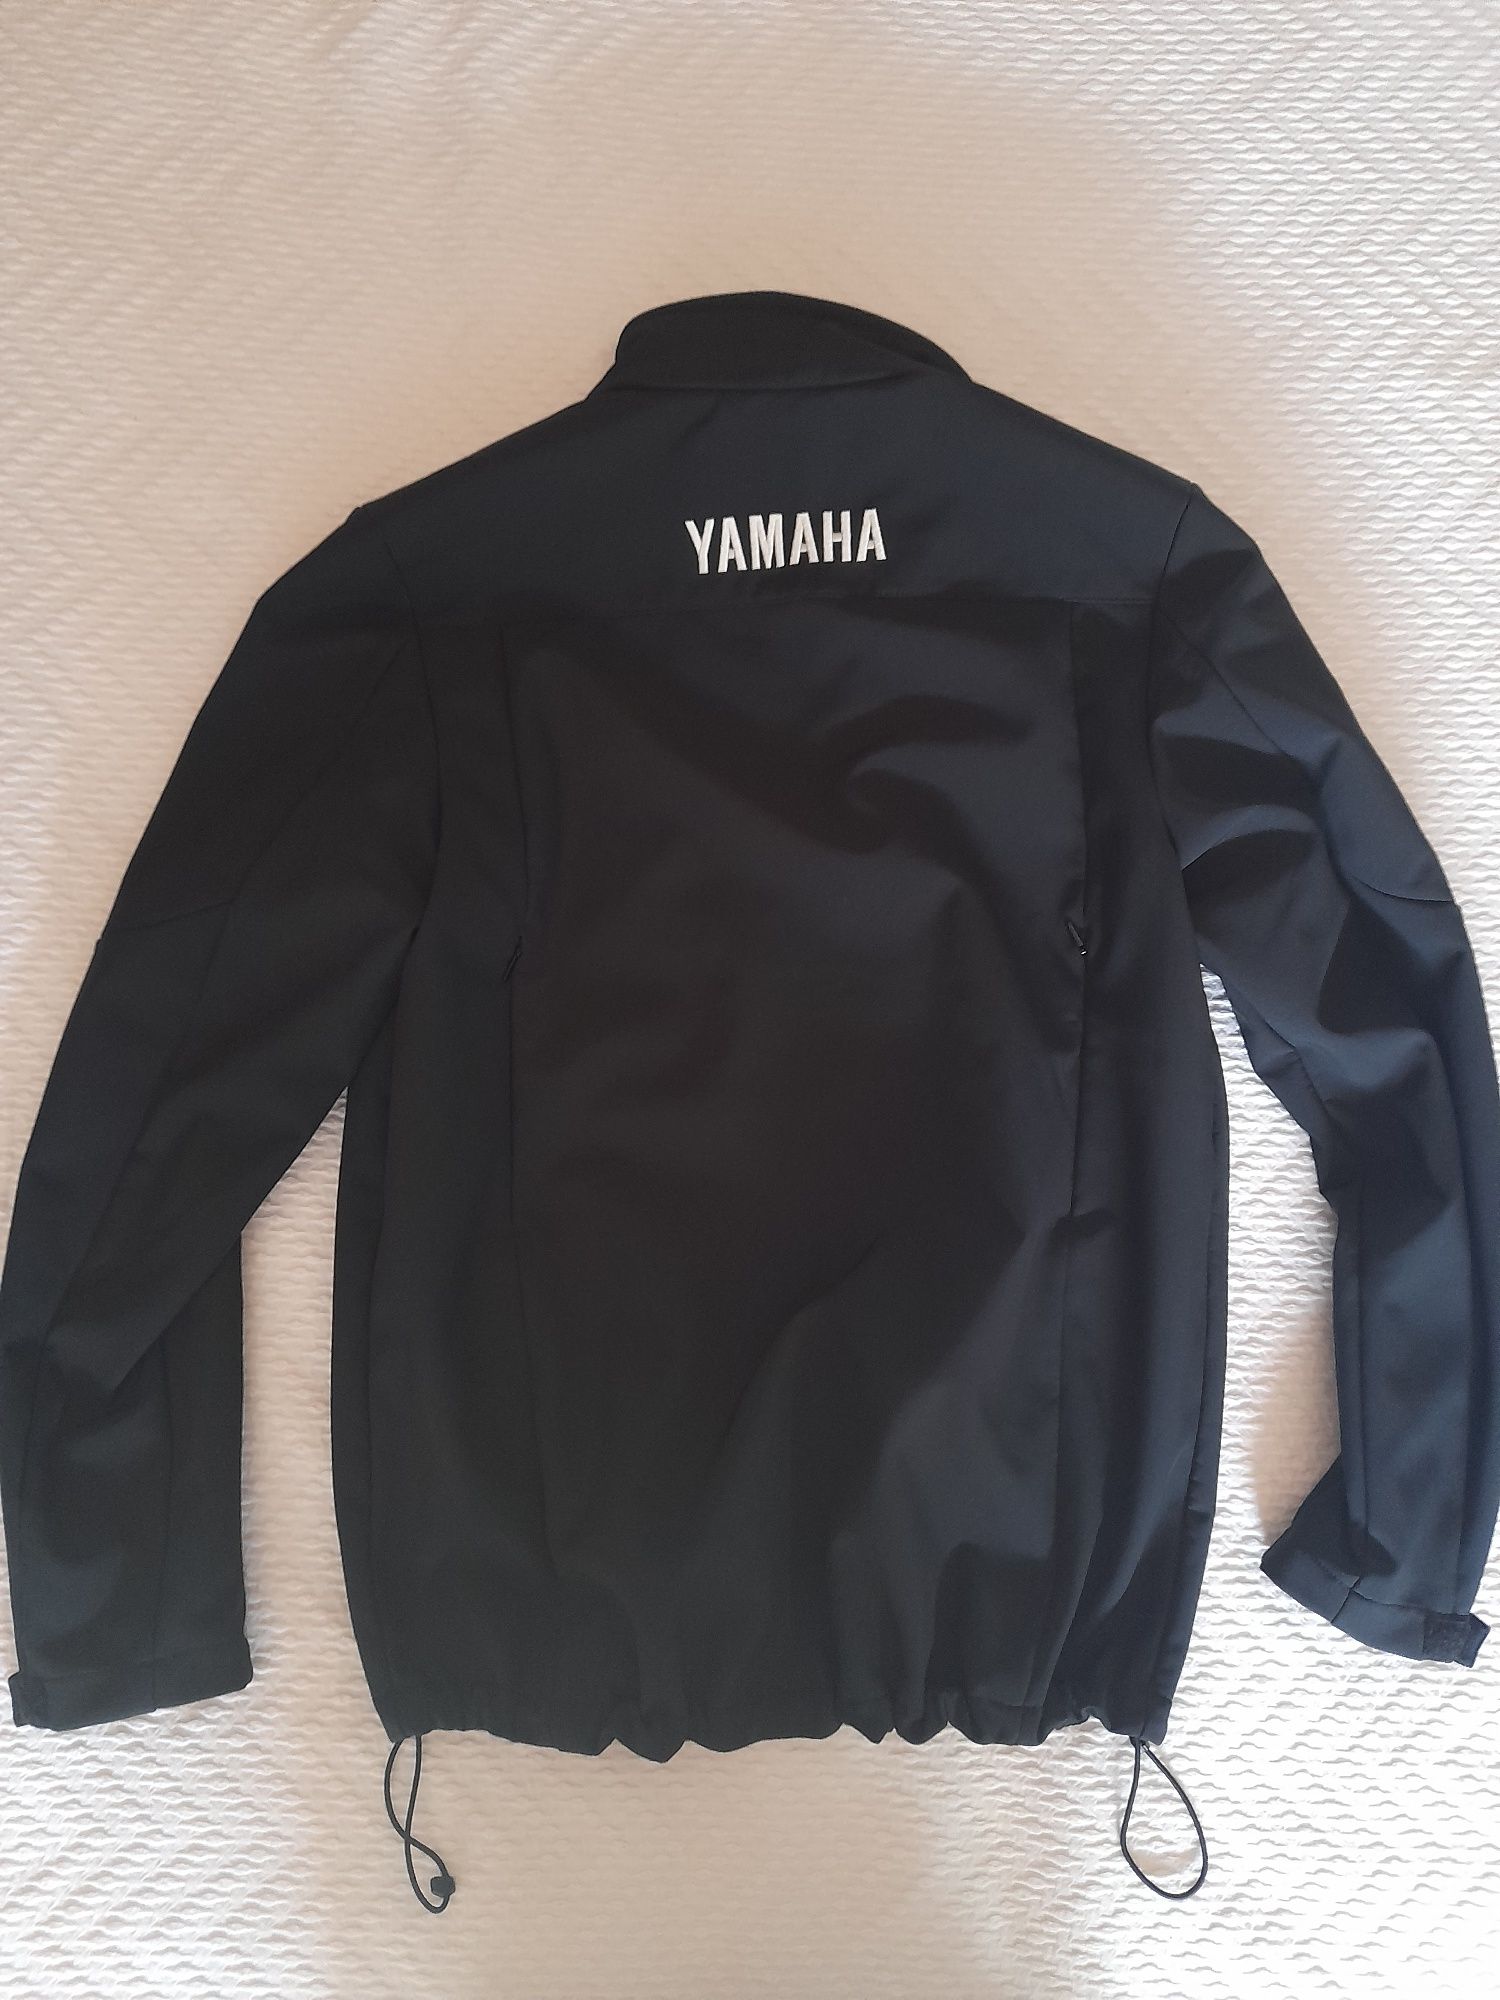 Blusão de mota yamaha